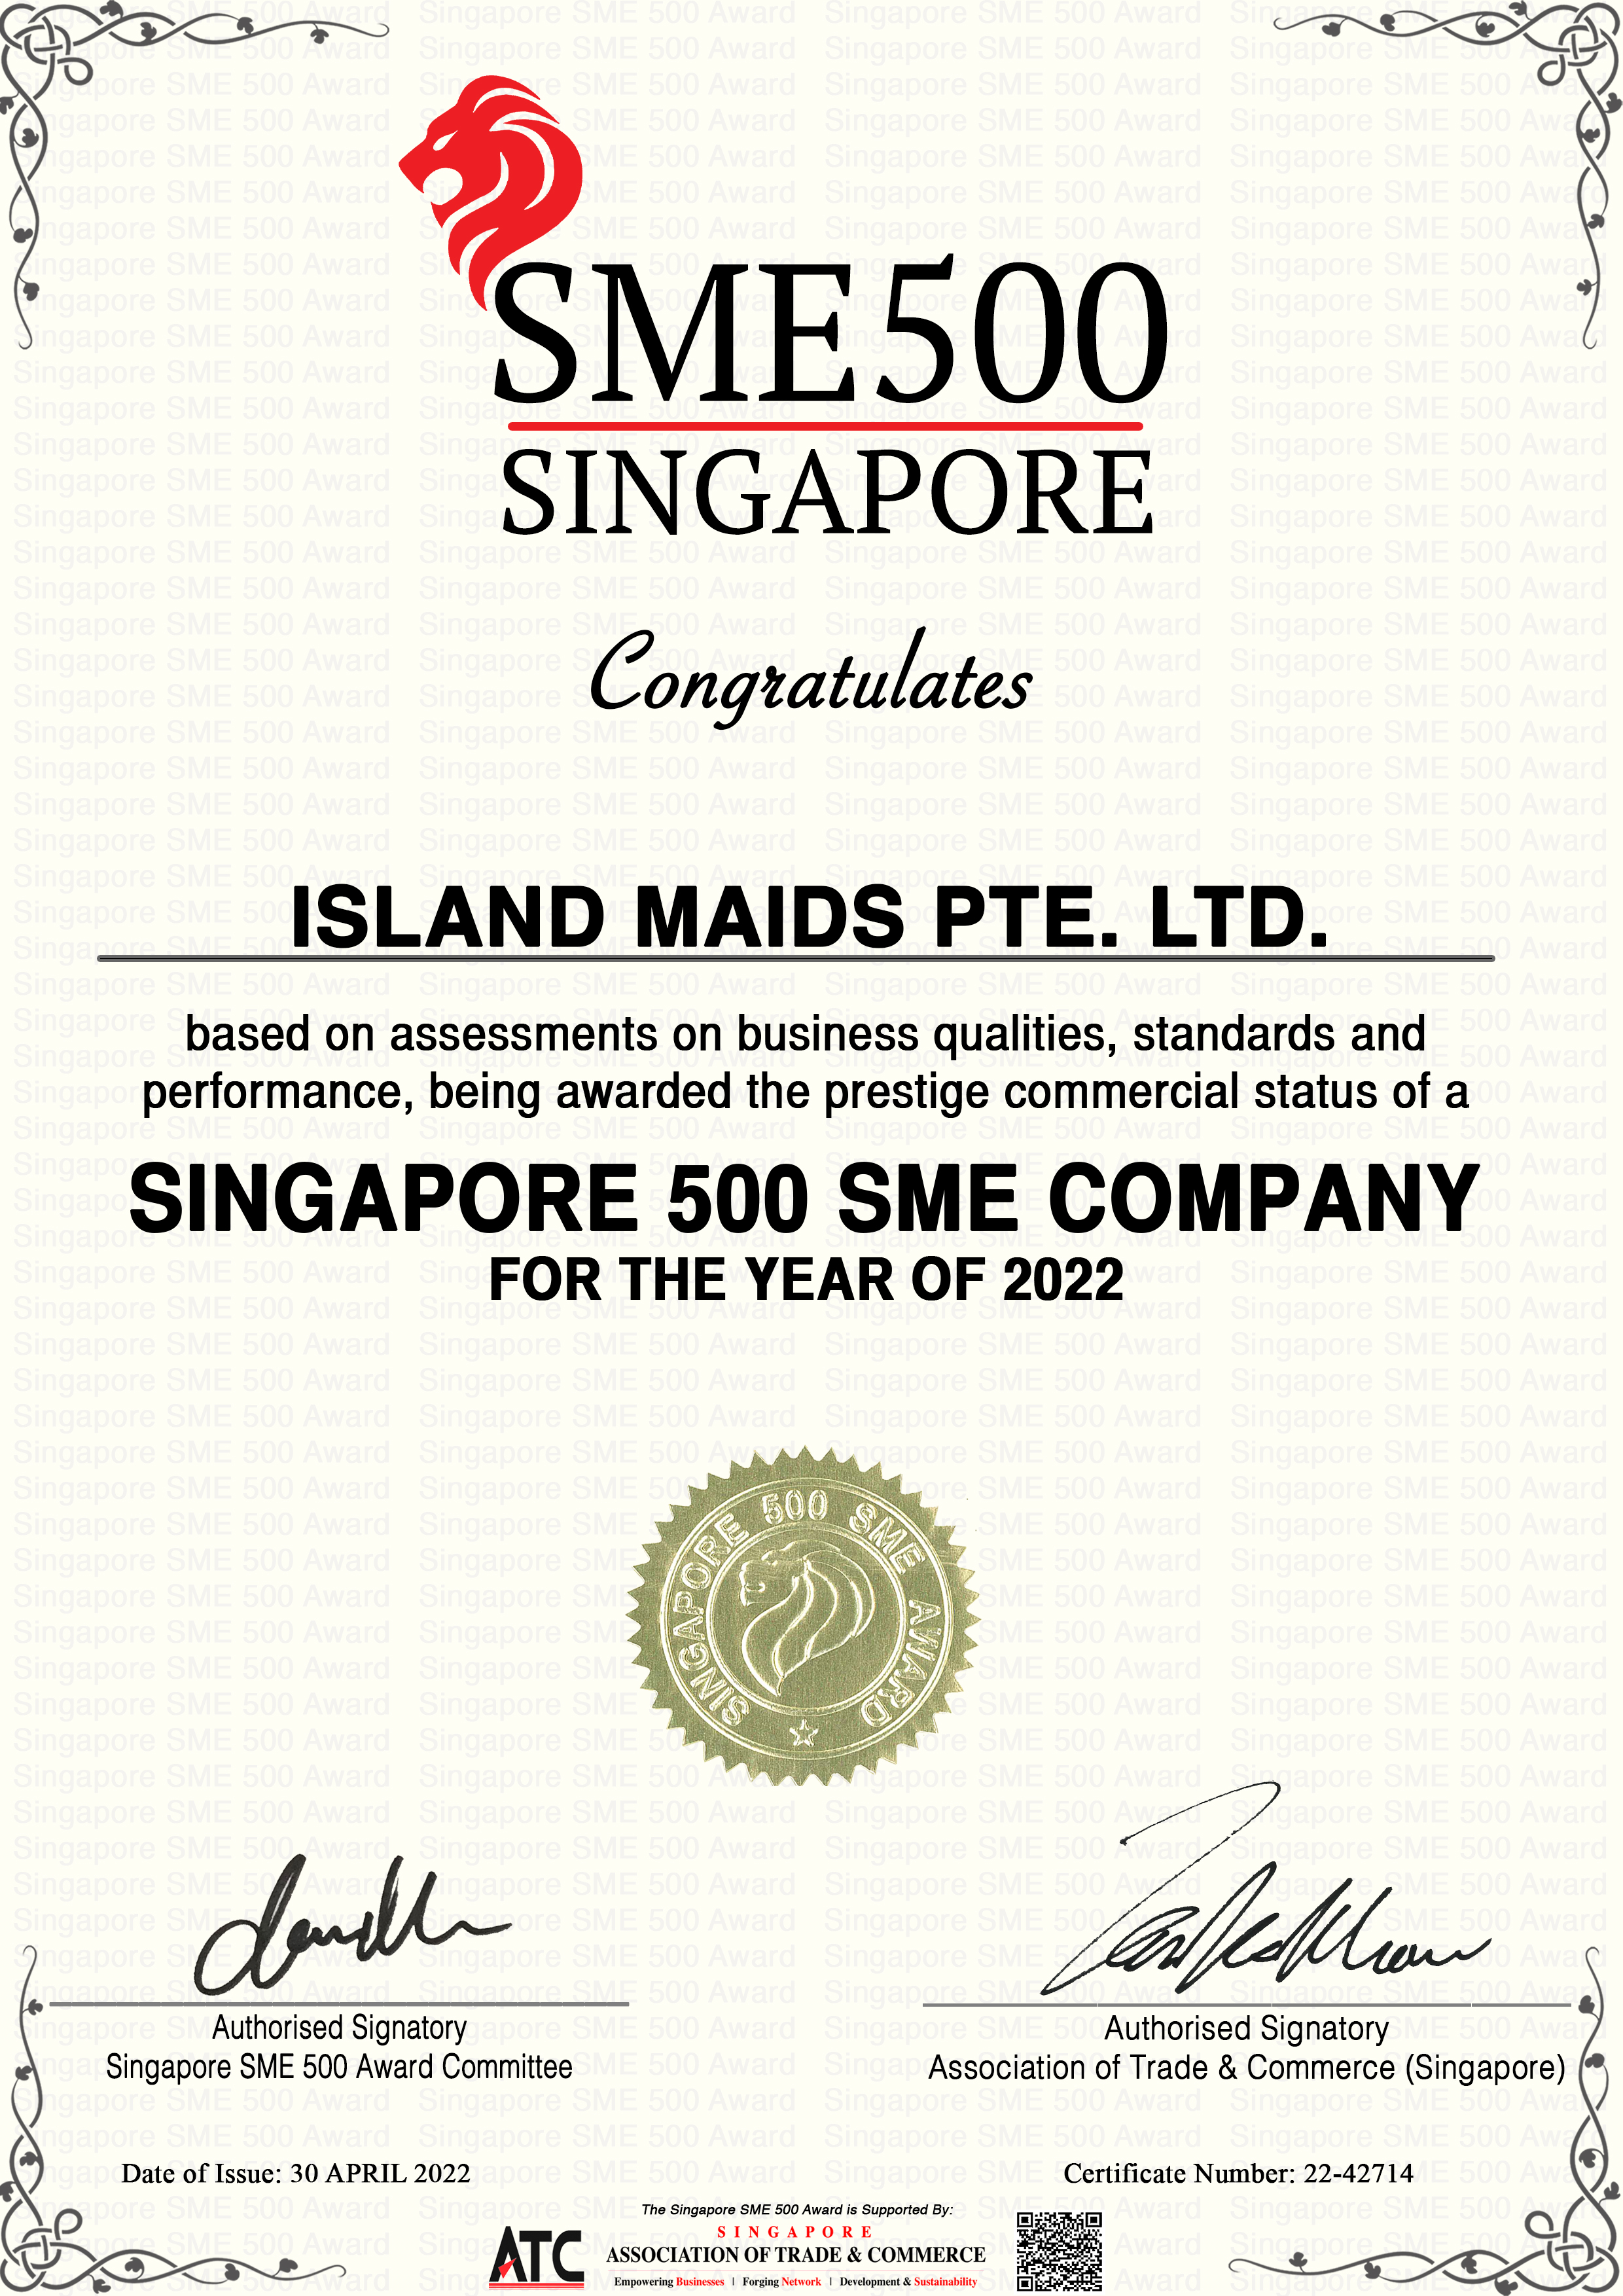 Singapore SME 500 Award 2022